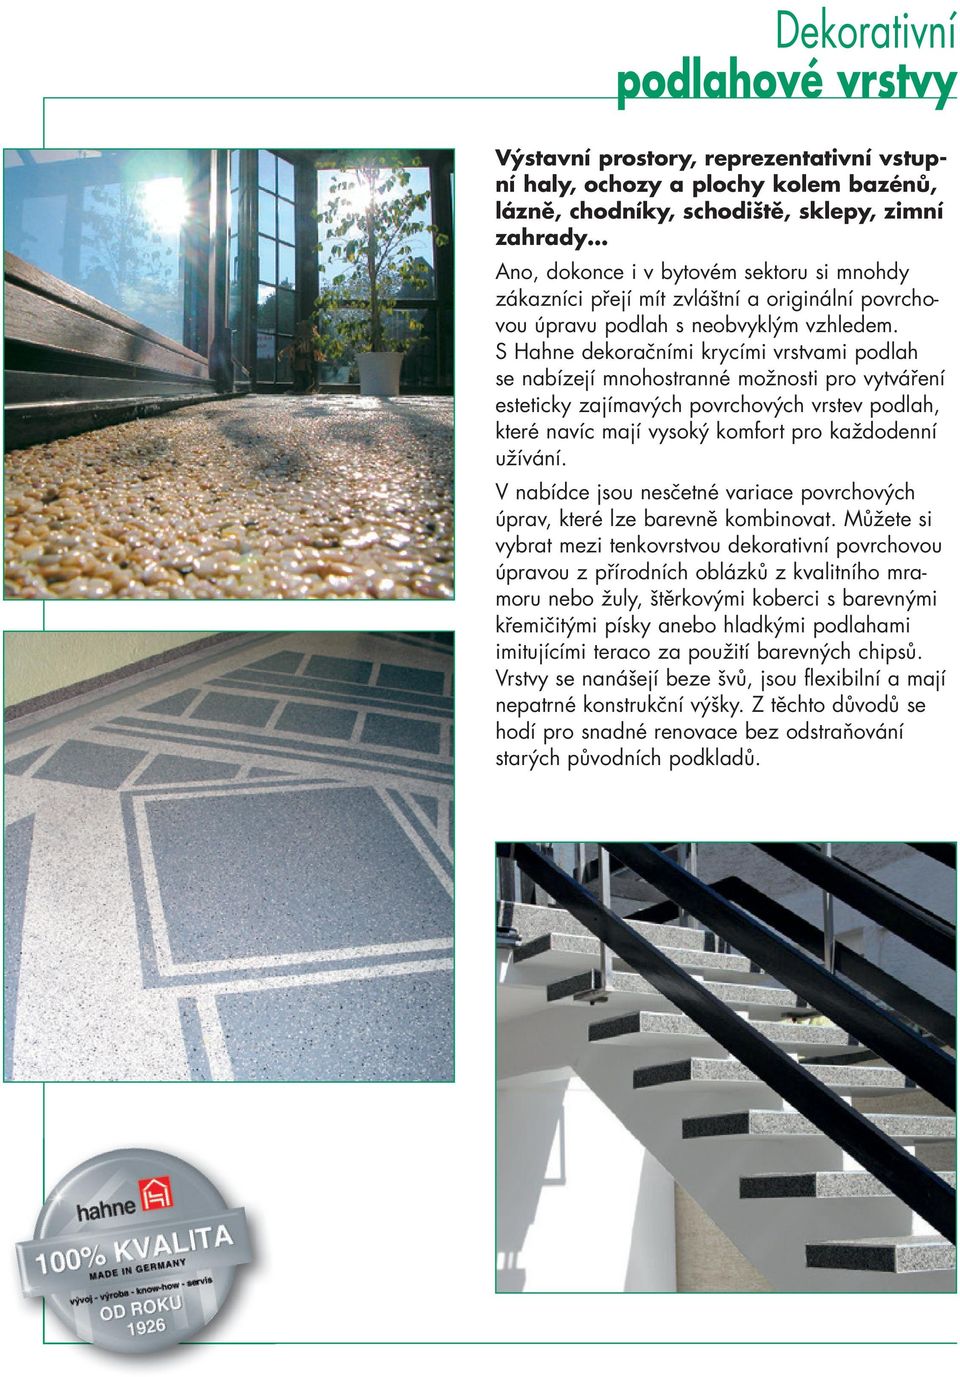 S Hahne dekoračními krycími vrstvami podlah se nabízejí mnohostranné možnosti pro vytváření esteticky zajímavých povrchových vrstev podlah, které navíc mají vysoký komfort pro každodenní užívání.